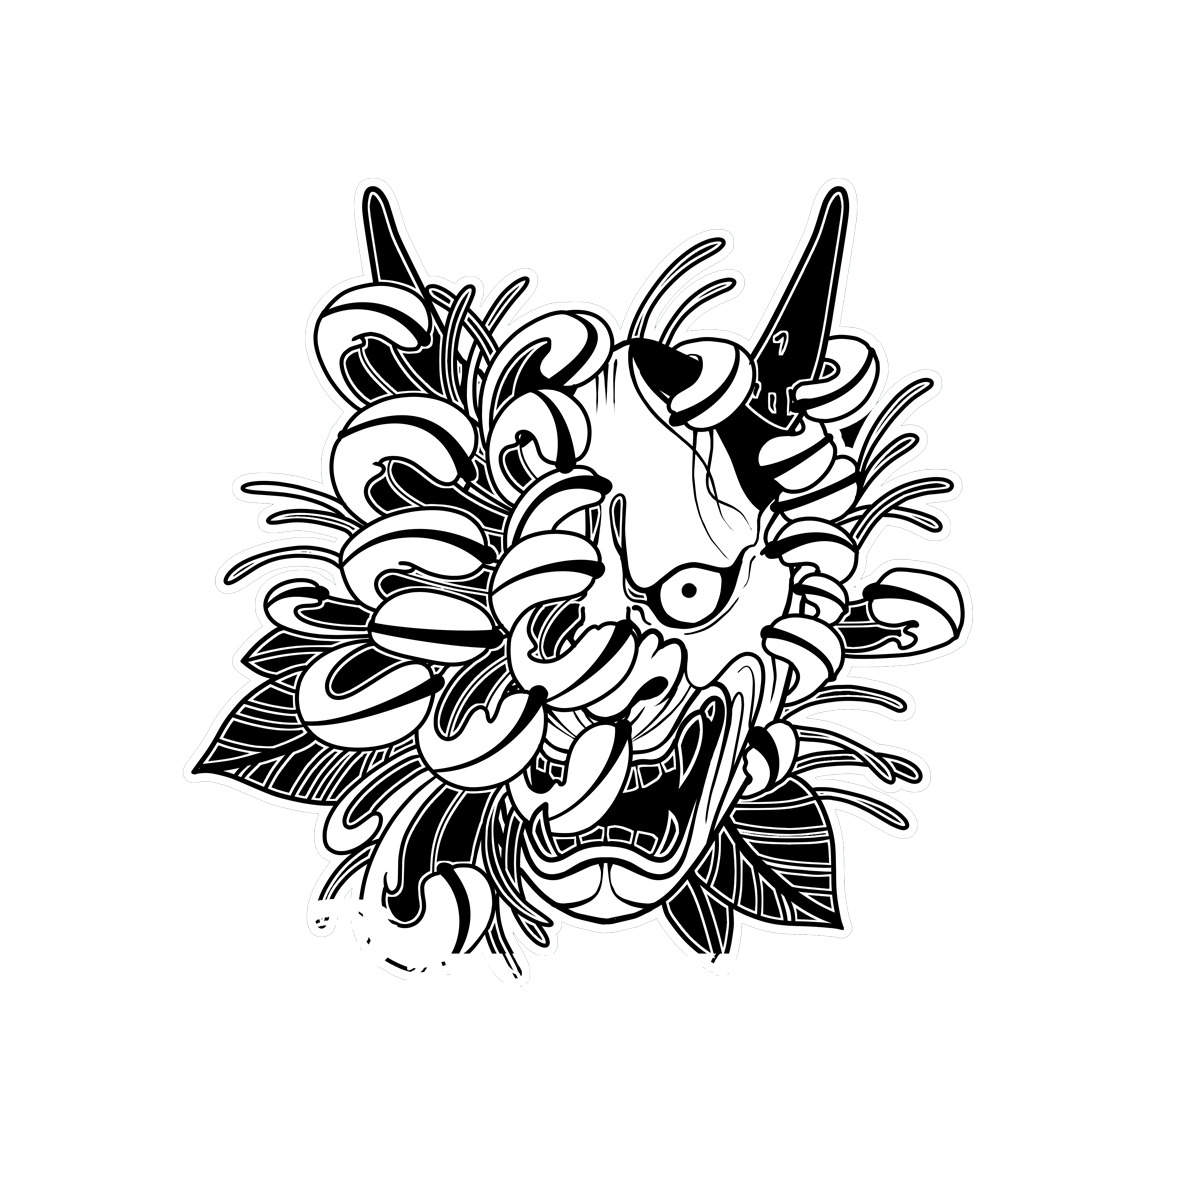 Book a tattoo artist today | G2 Tattoo Shop Okinawa